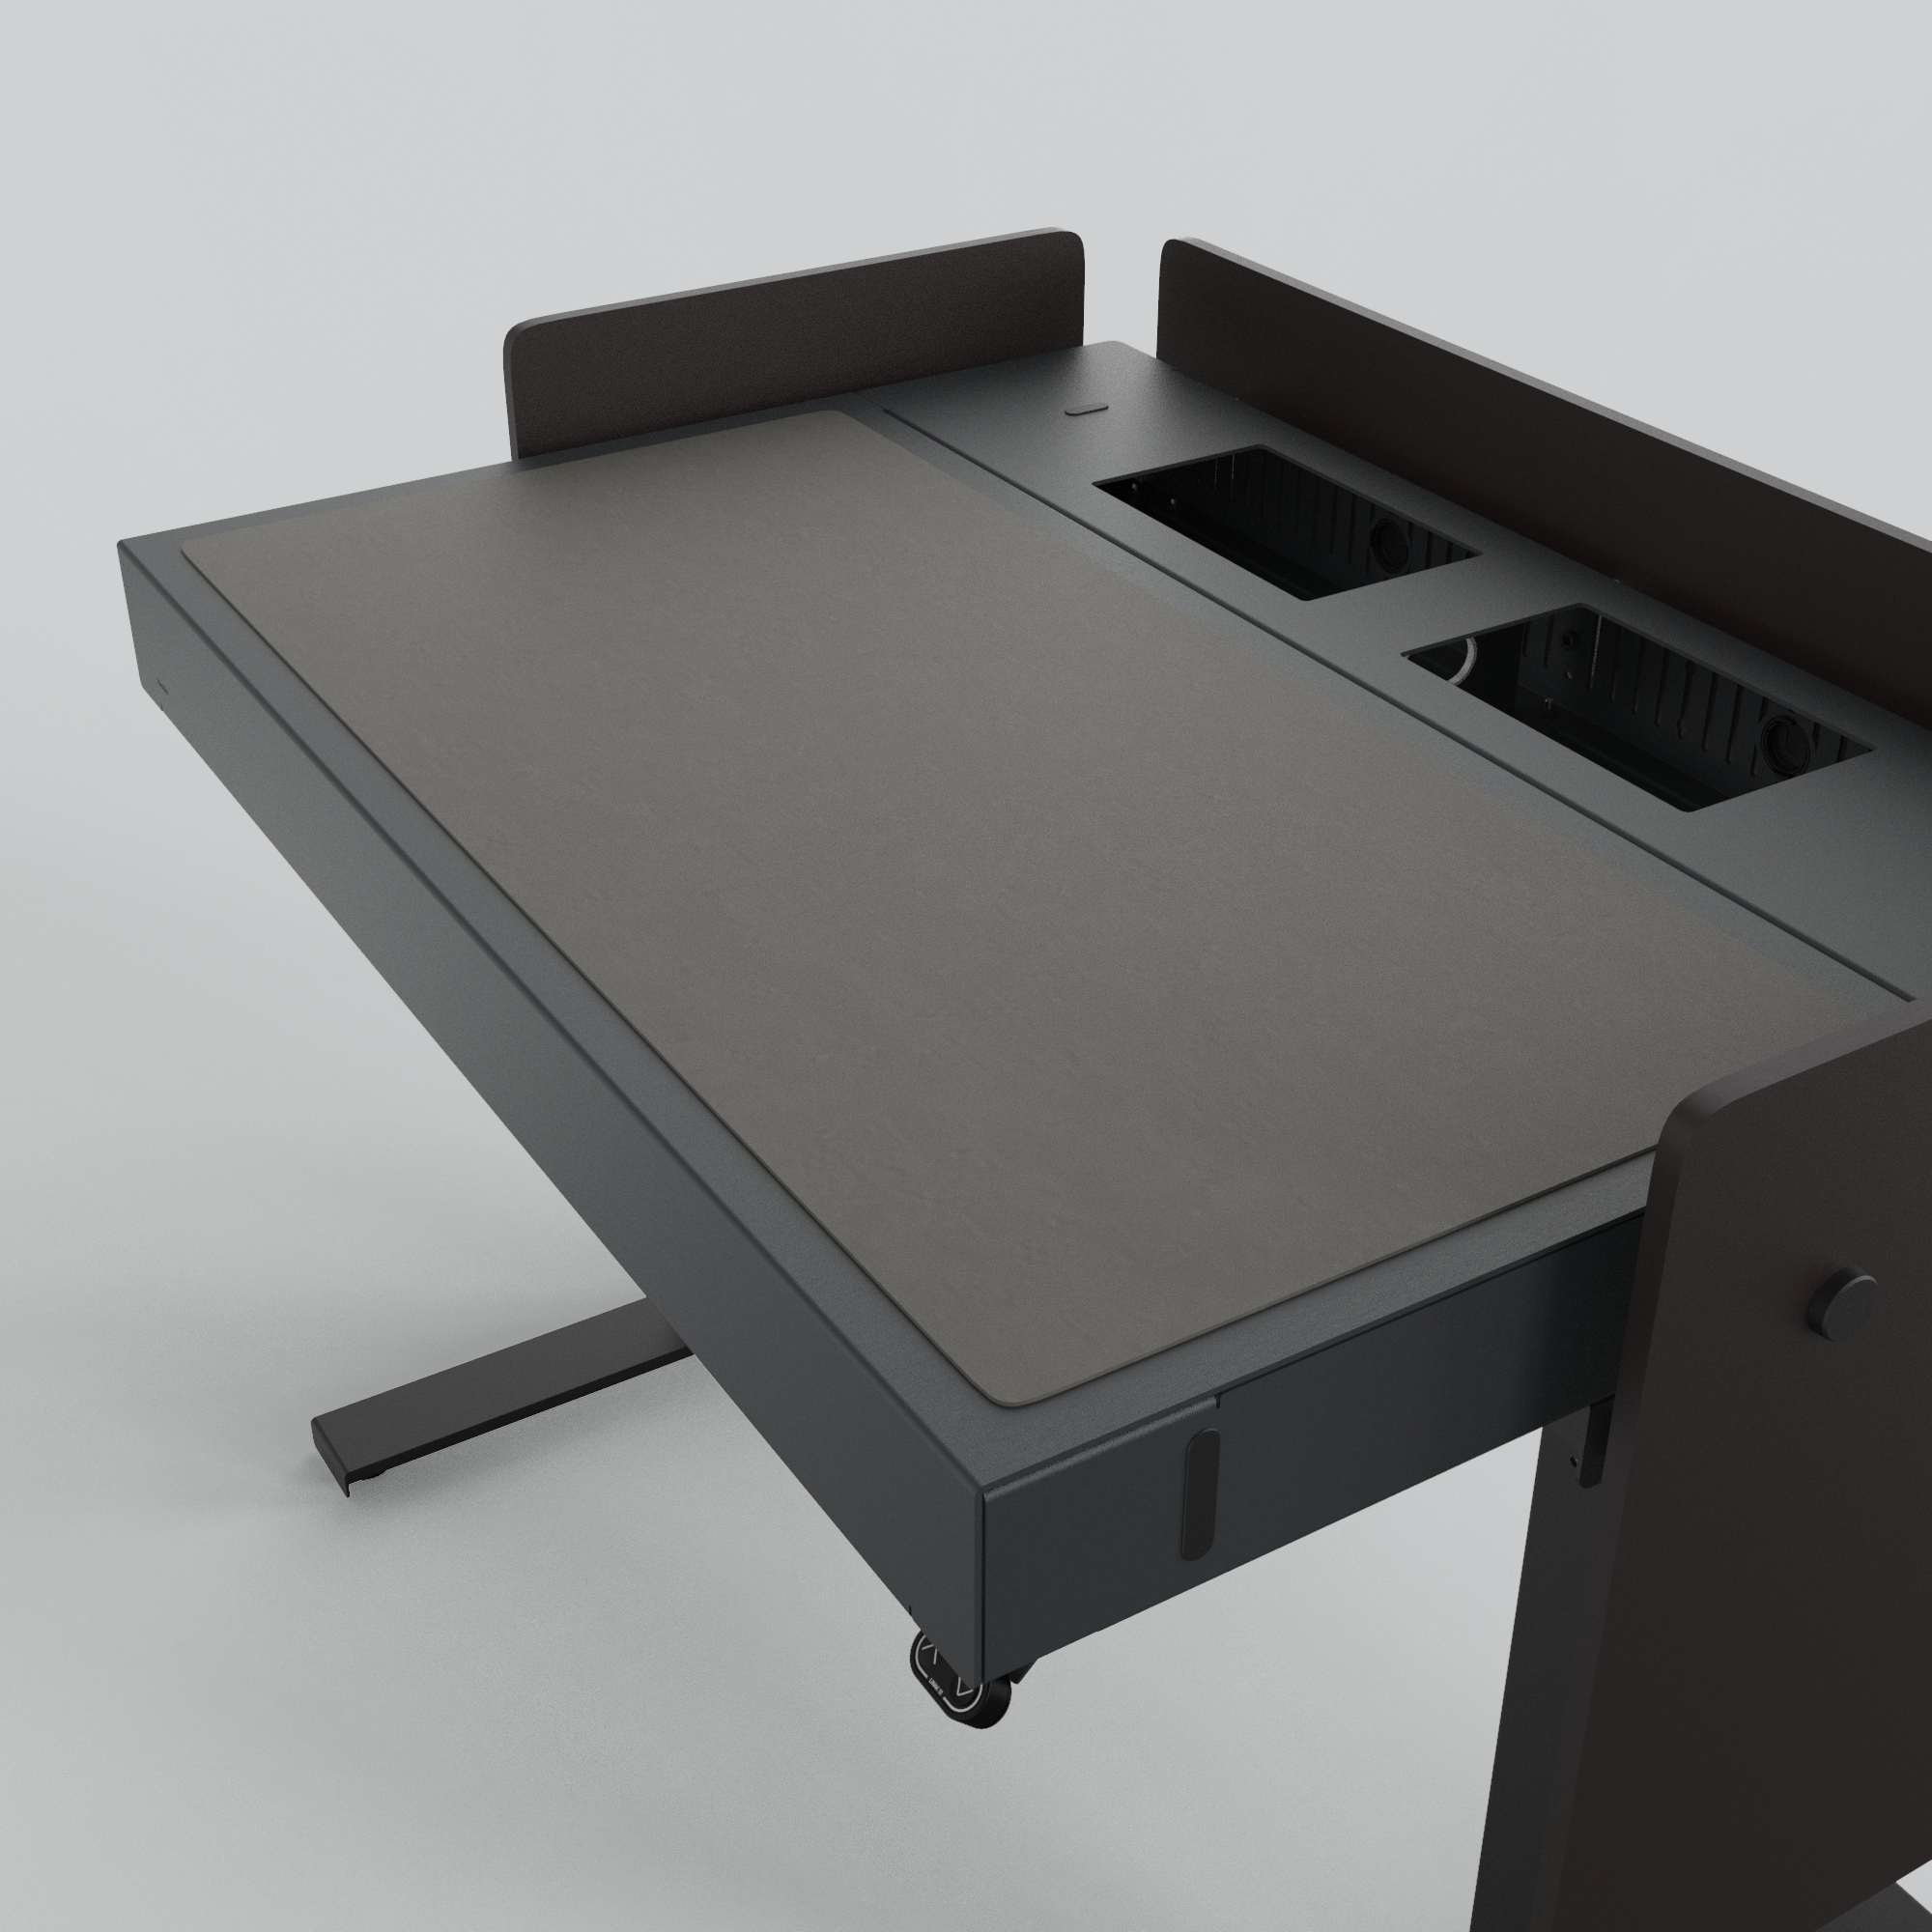 H922-4178 4U Deskpad - Iron